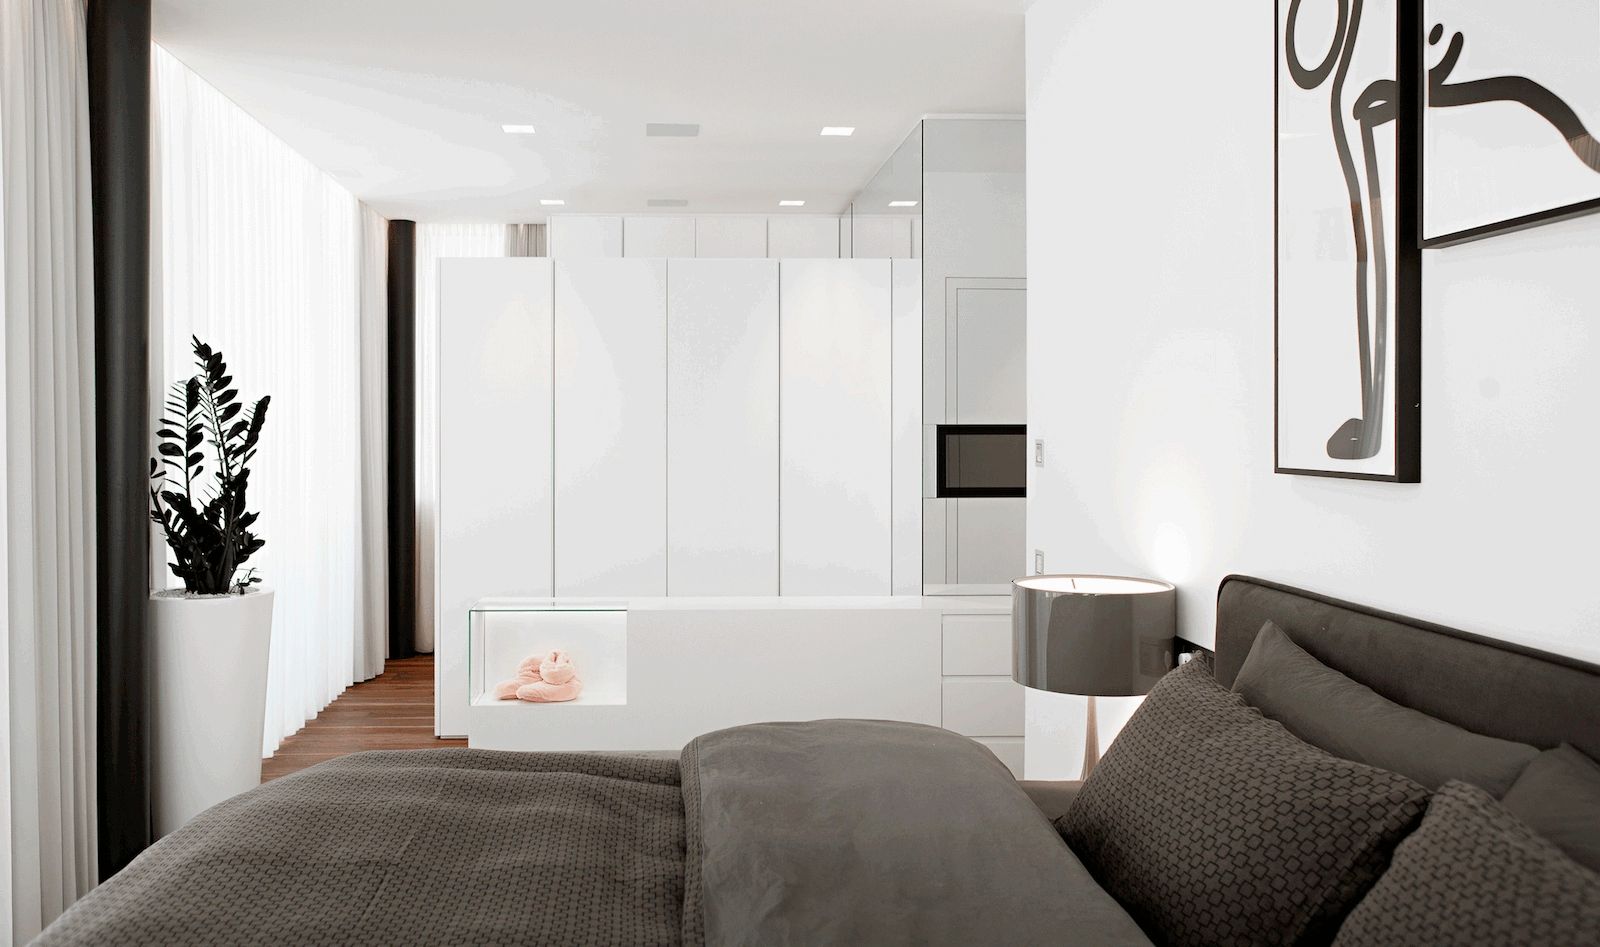 Casa M, monovolume architecture + design monovolume architecture + design Modern style bedroom